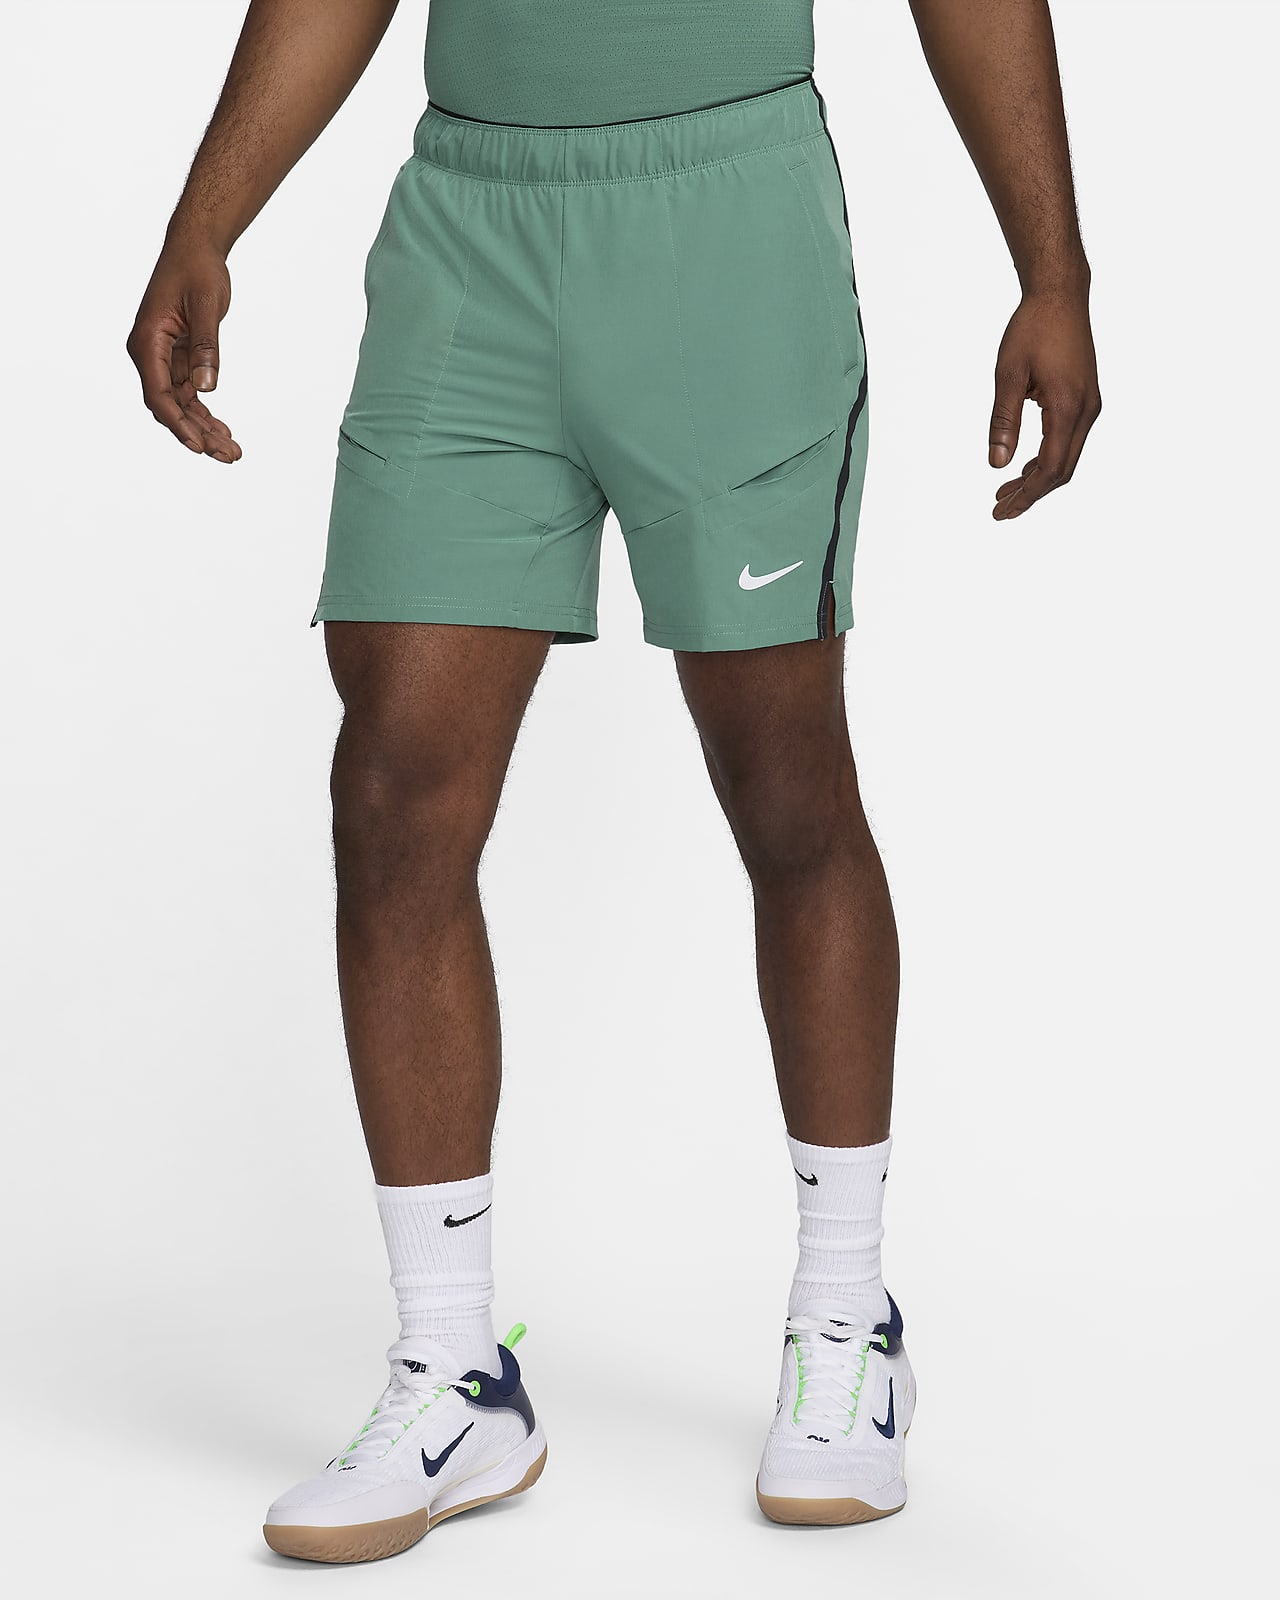 Nike Court Advantage Men's Tennis Pants - Glacier Blue